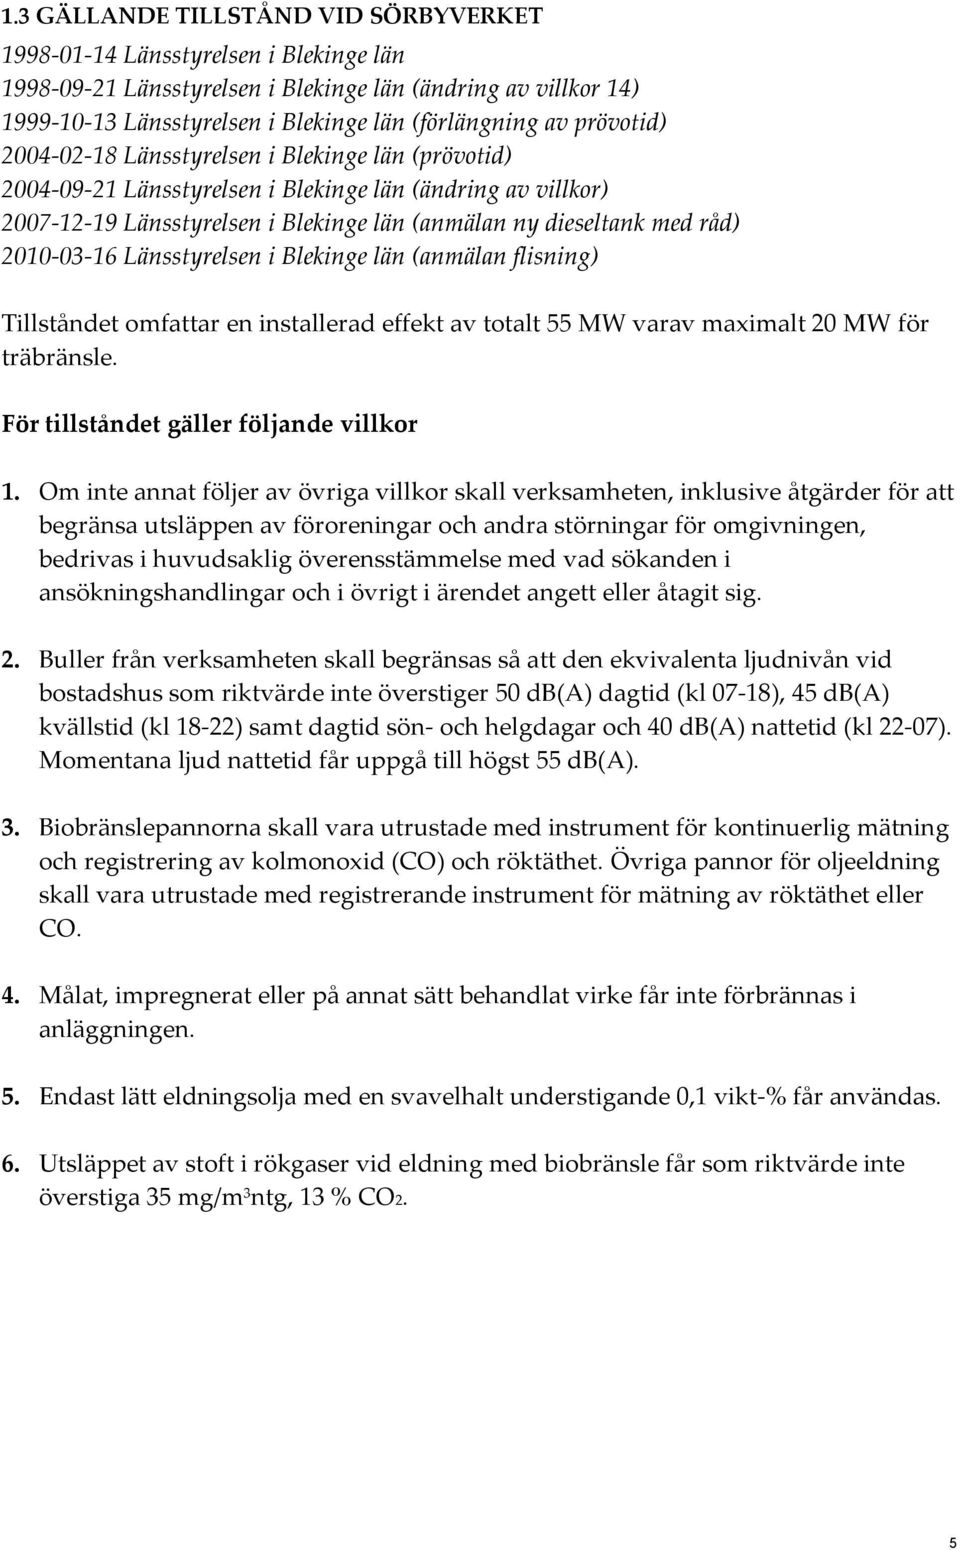 2010-03-16 Länsstyrelsen i Blekinge län (anmälan flisning) Tillståndet omfattar en installerad effekt av totalt 55 MW varav maximalt 20 MW för träbränsle. För tillståndet gäller följande villkor 1.